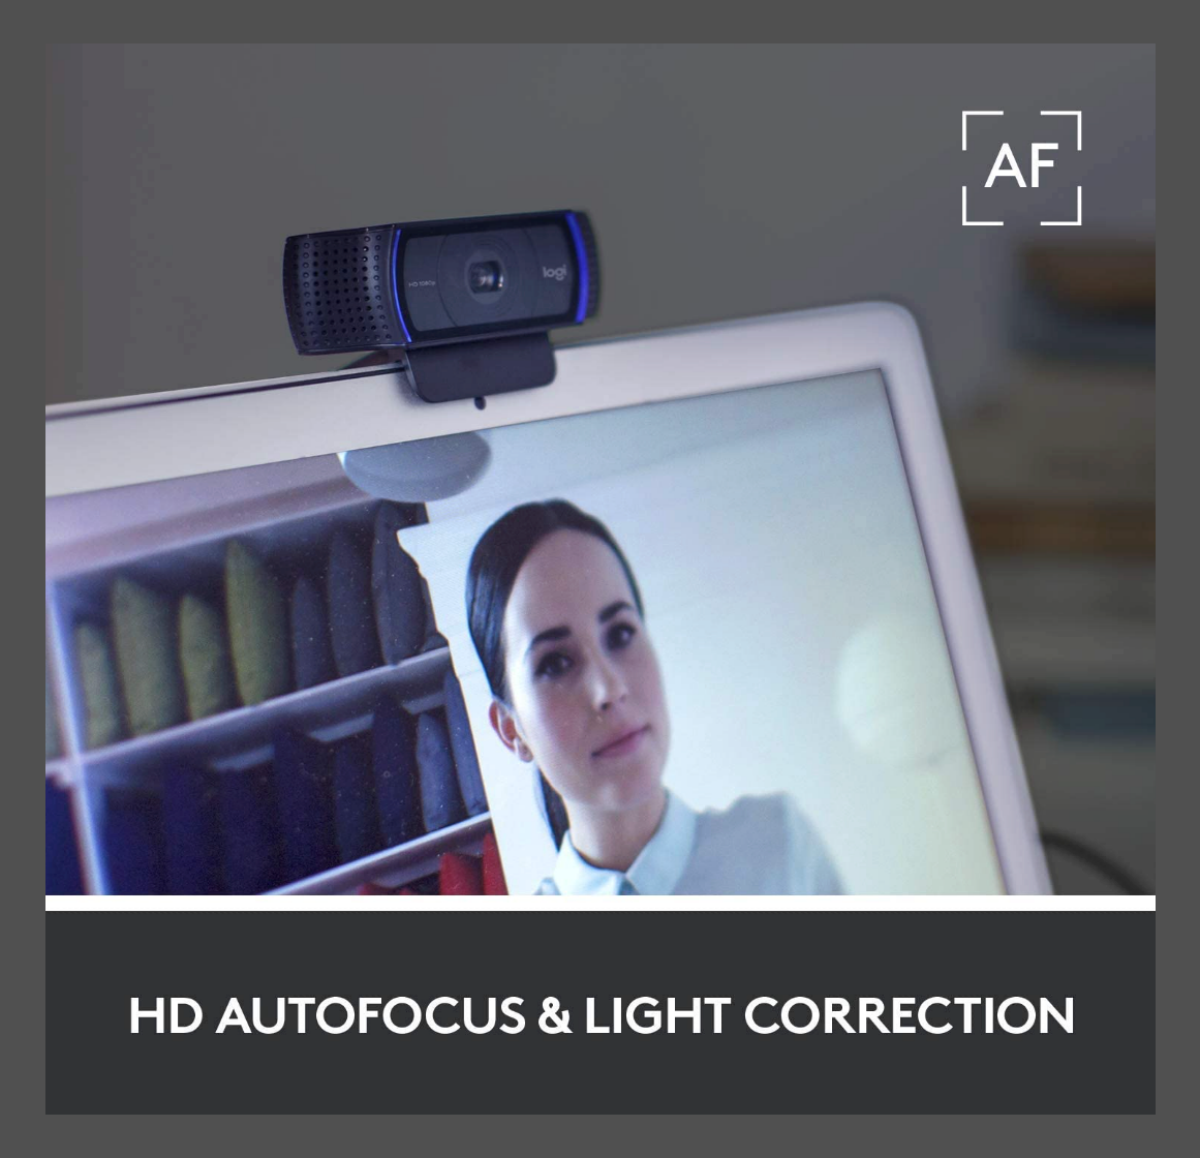 A Logitech C920x HD Pro Webcam features HD autofocus and light correction